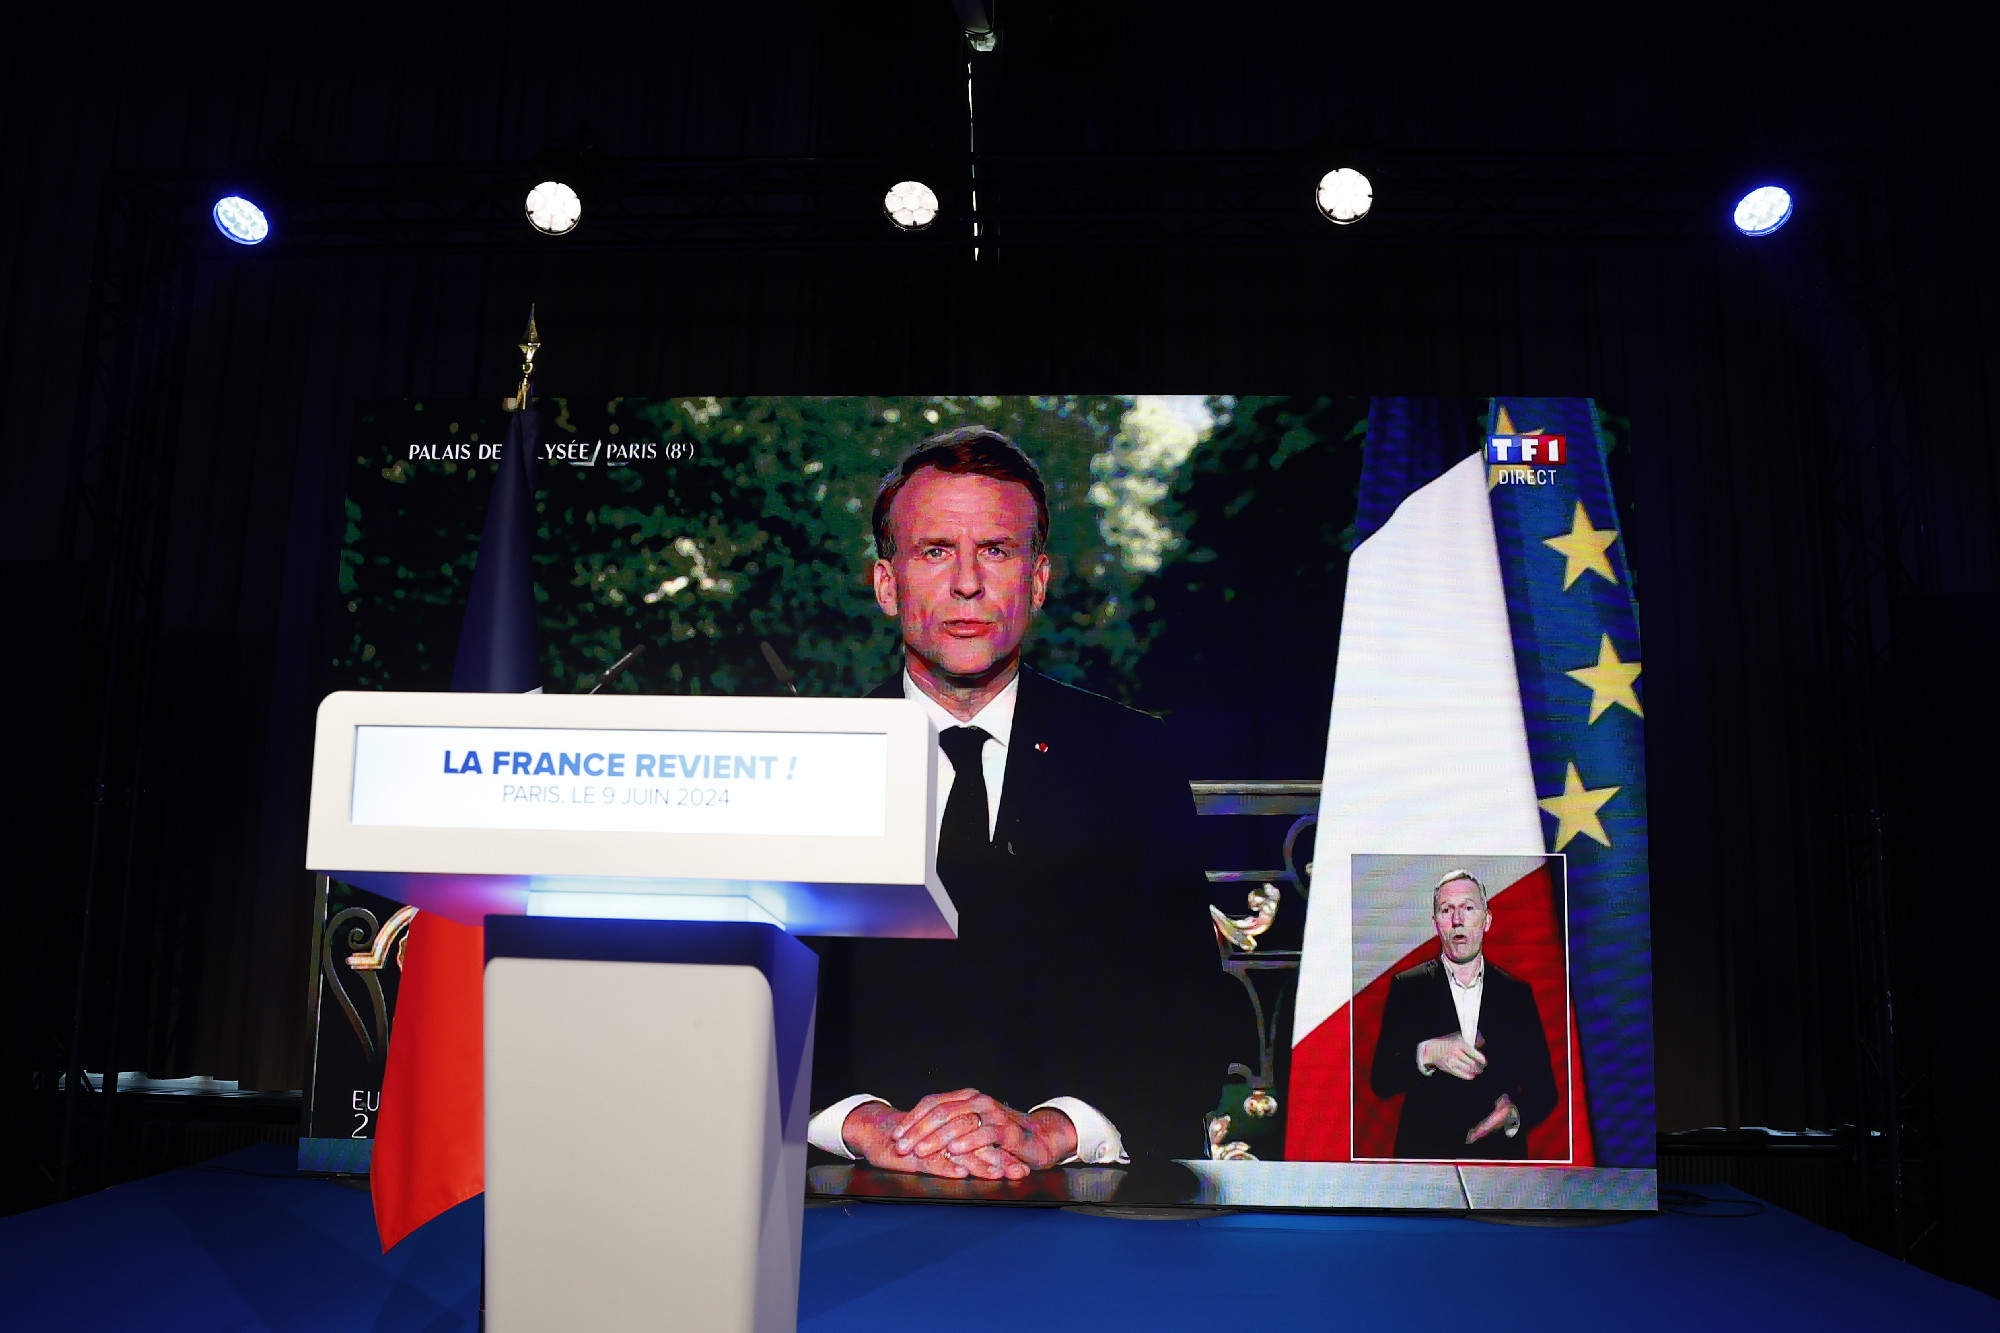 Francia választások: jobbra át?